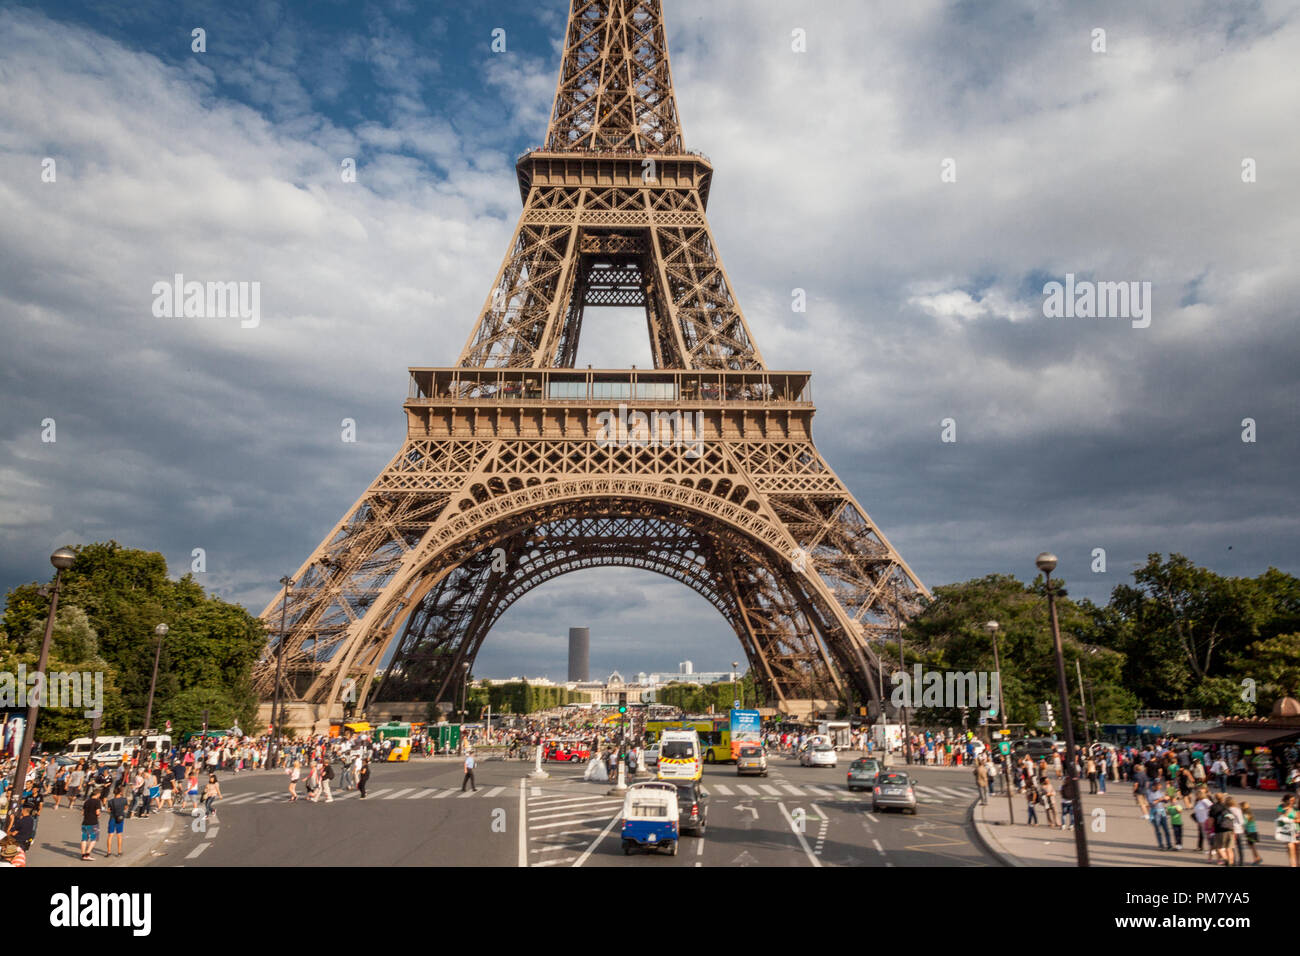 walking through the streets of Paris, Tour Eiffel Stock Photo